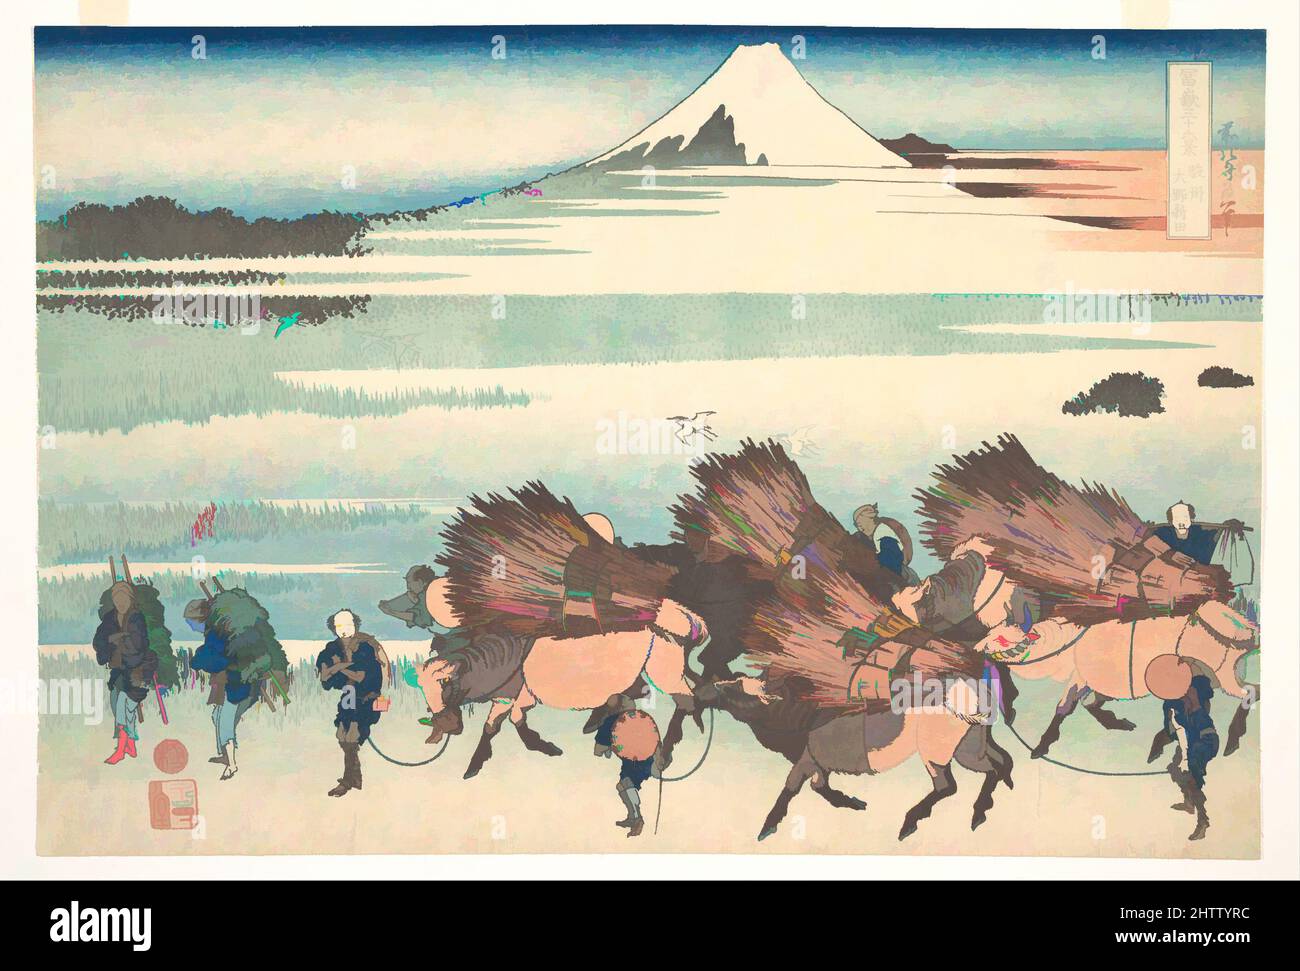 Arte ispirata ai nuovi campi di Ōno nella provincia di Suruga (Sunshū Ōno shinden), dalla serie trentasei viste del Monte Fuji (Fugaku sanjūrokkei), 冨嶽三十六景 駿州大野新田, periodo Edo (1615–1868), ca. 1830–32, Giappone, stampa a blocchi di legno policromi; inchiostro e colore su carta, 10 x 14 3/4 pollici (25,4 x 37., opere classiche modernizzate da Artotop con un tuffo di modernità. Forme, colore e valore, impatto visivo accattivante sulle emozioni artistiche attraverso la libertà delle opere d'arte in modo contemporaneo. Un messaggio senza tempo che persegue una nuova direzione selvaggiamente creativa. Artisti che si rivolgono al supporto digitale e creano l'NFT Artotop Foto Stock